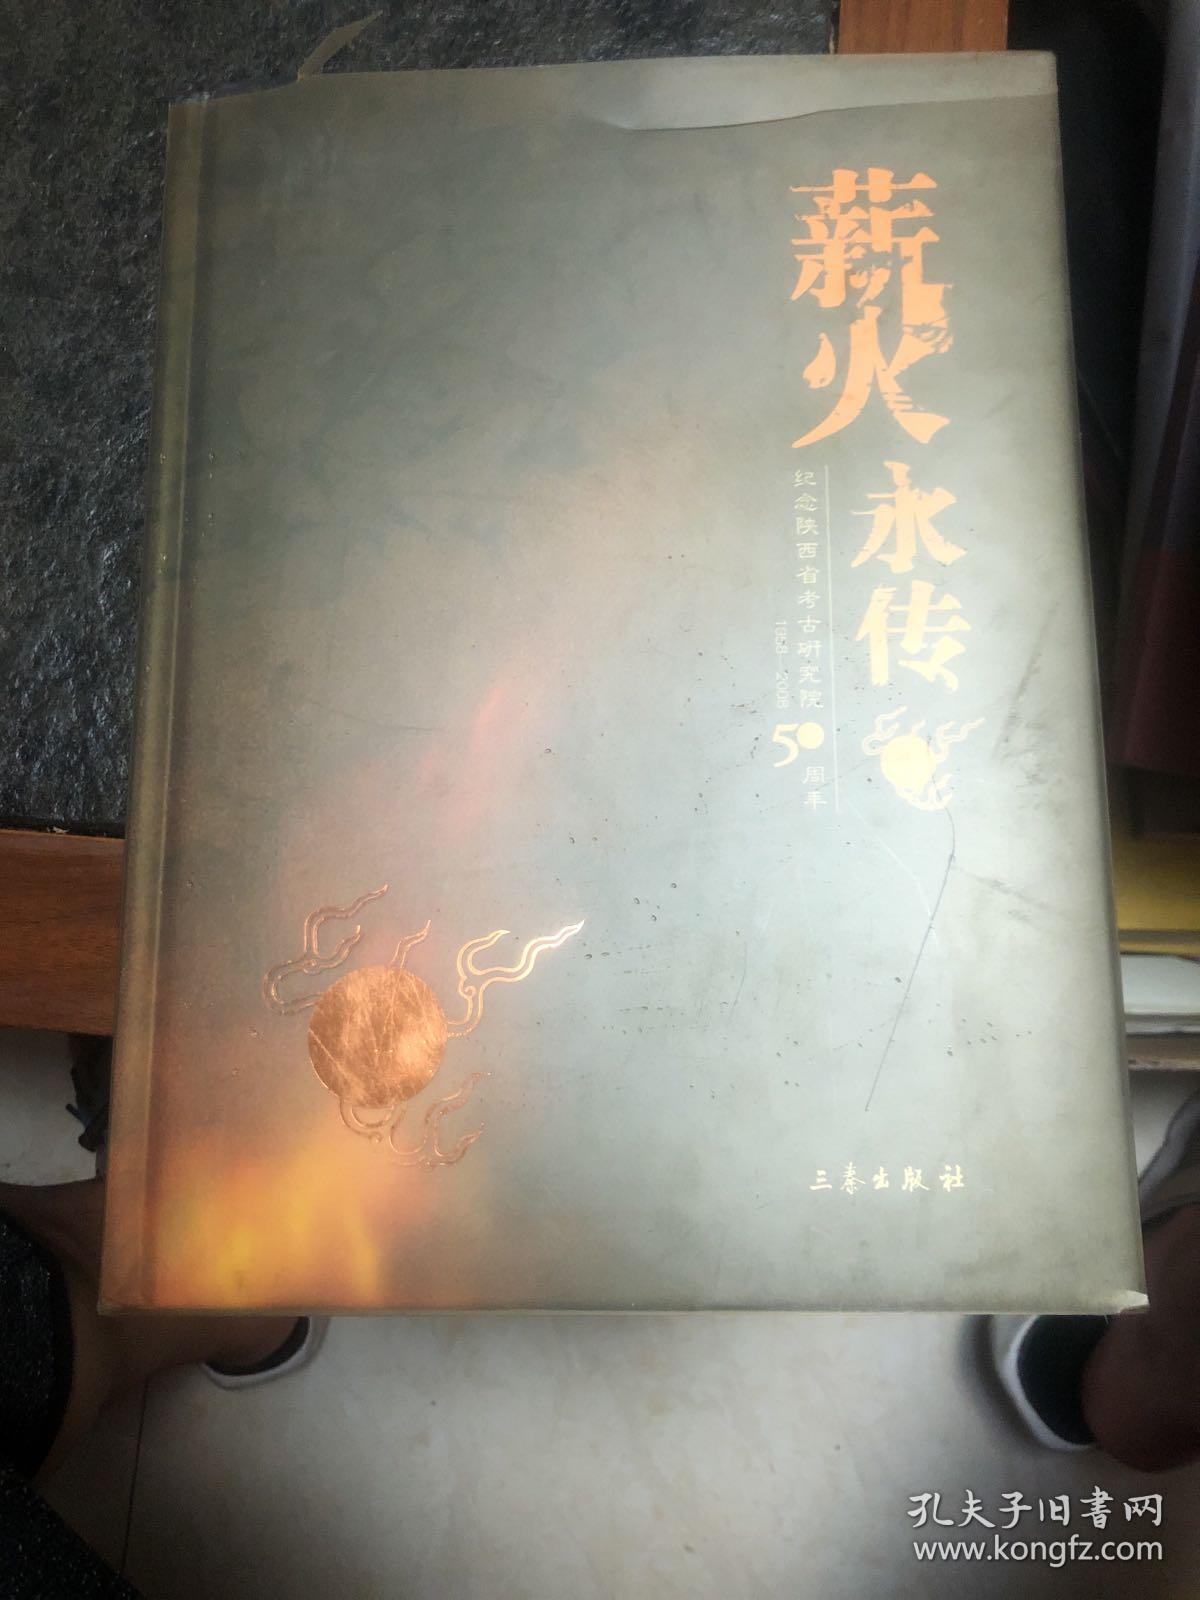 薪火永传:纪念陕西省考古研究院50周年:1958-2008